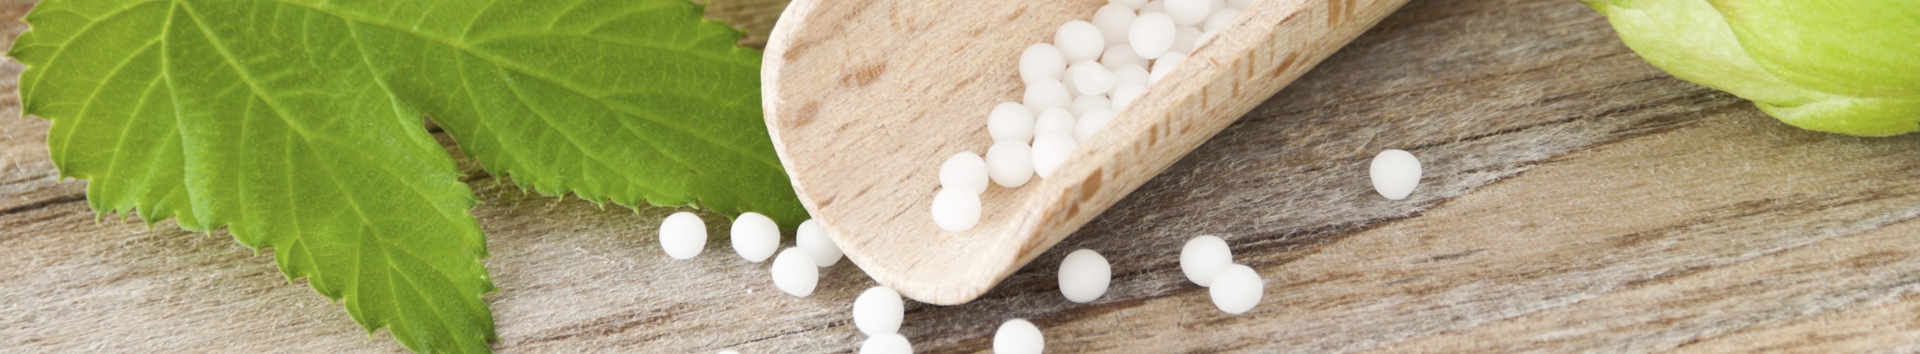 A Homeopatia pode curar o estresse infantil?